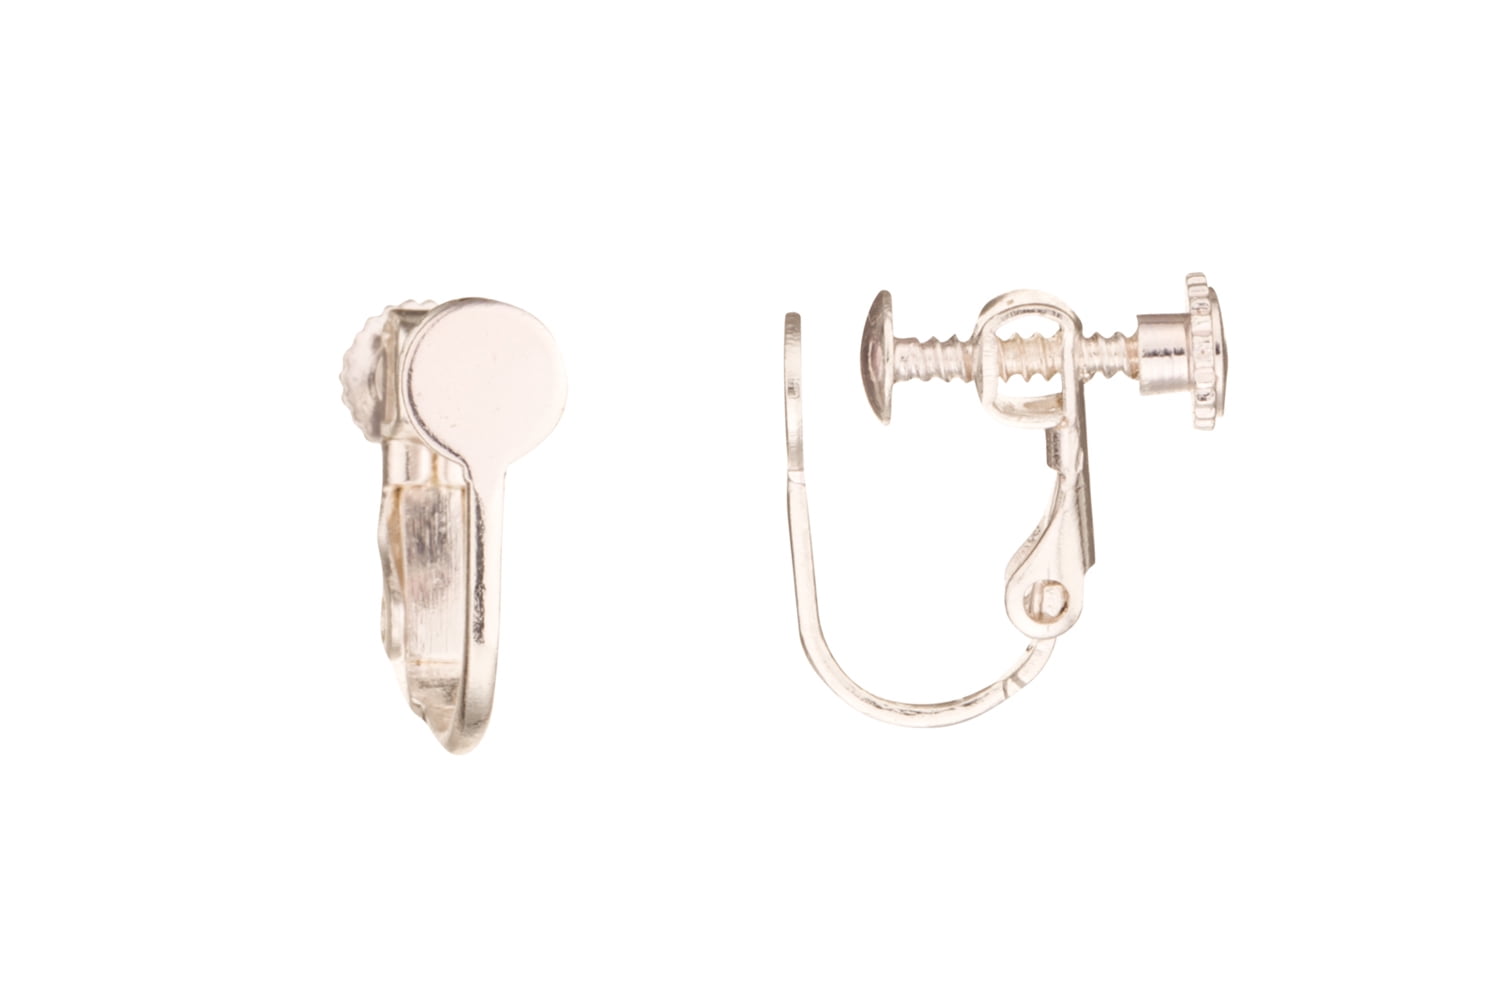 12x Ear Wire Screw Back Clip-on NON PIERCED Earrings Hoop Finding DIY Silver 